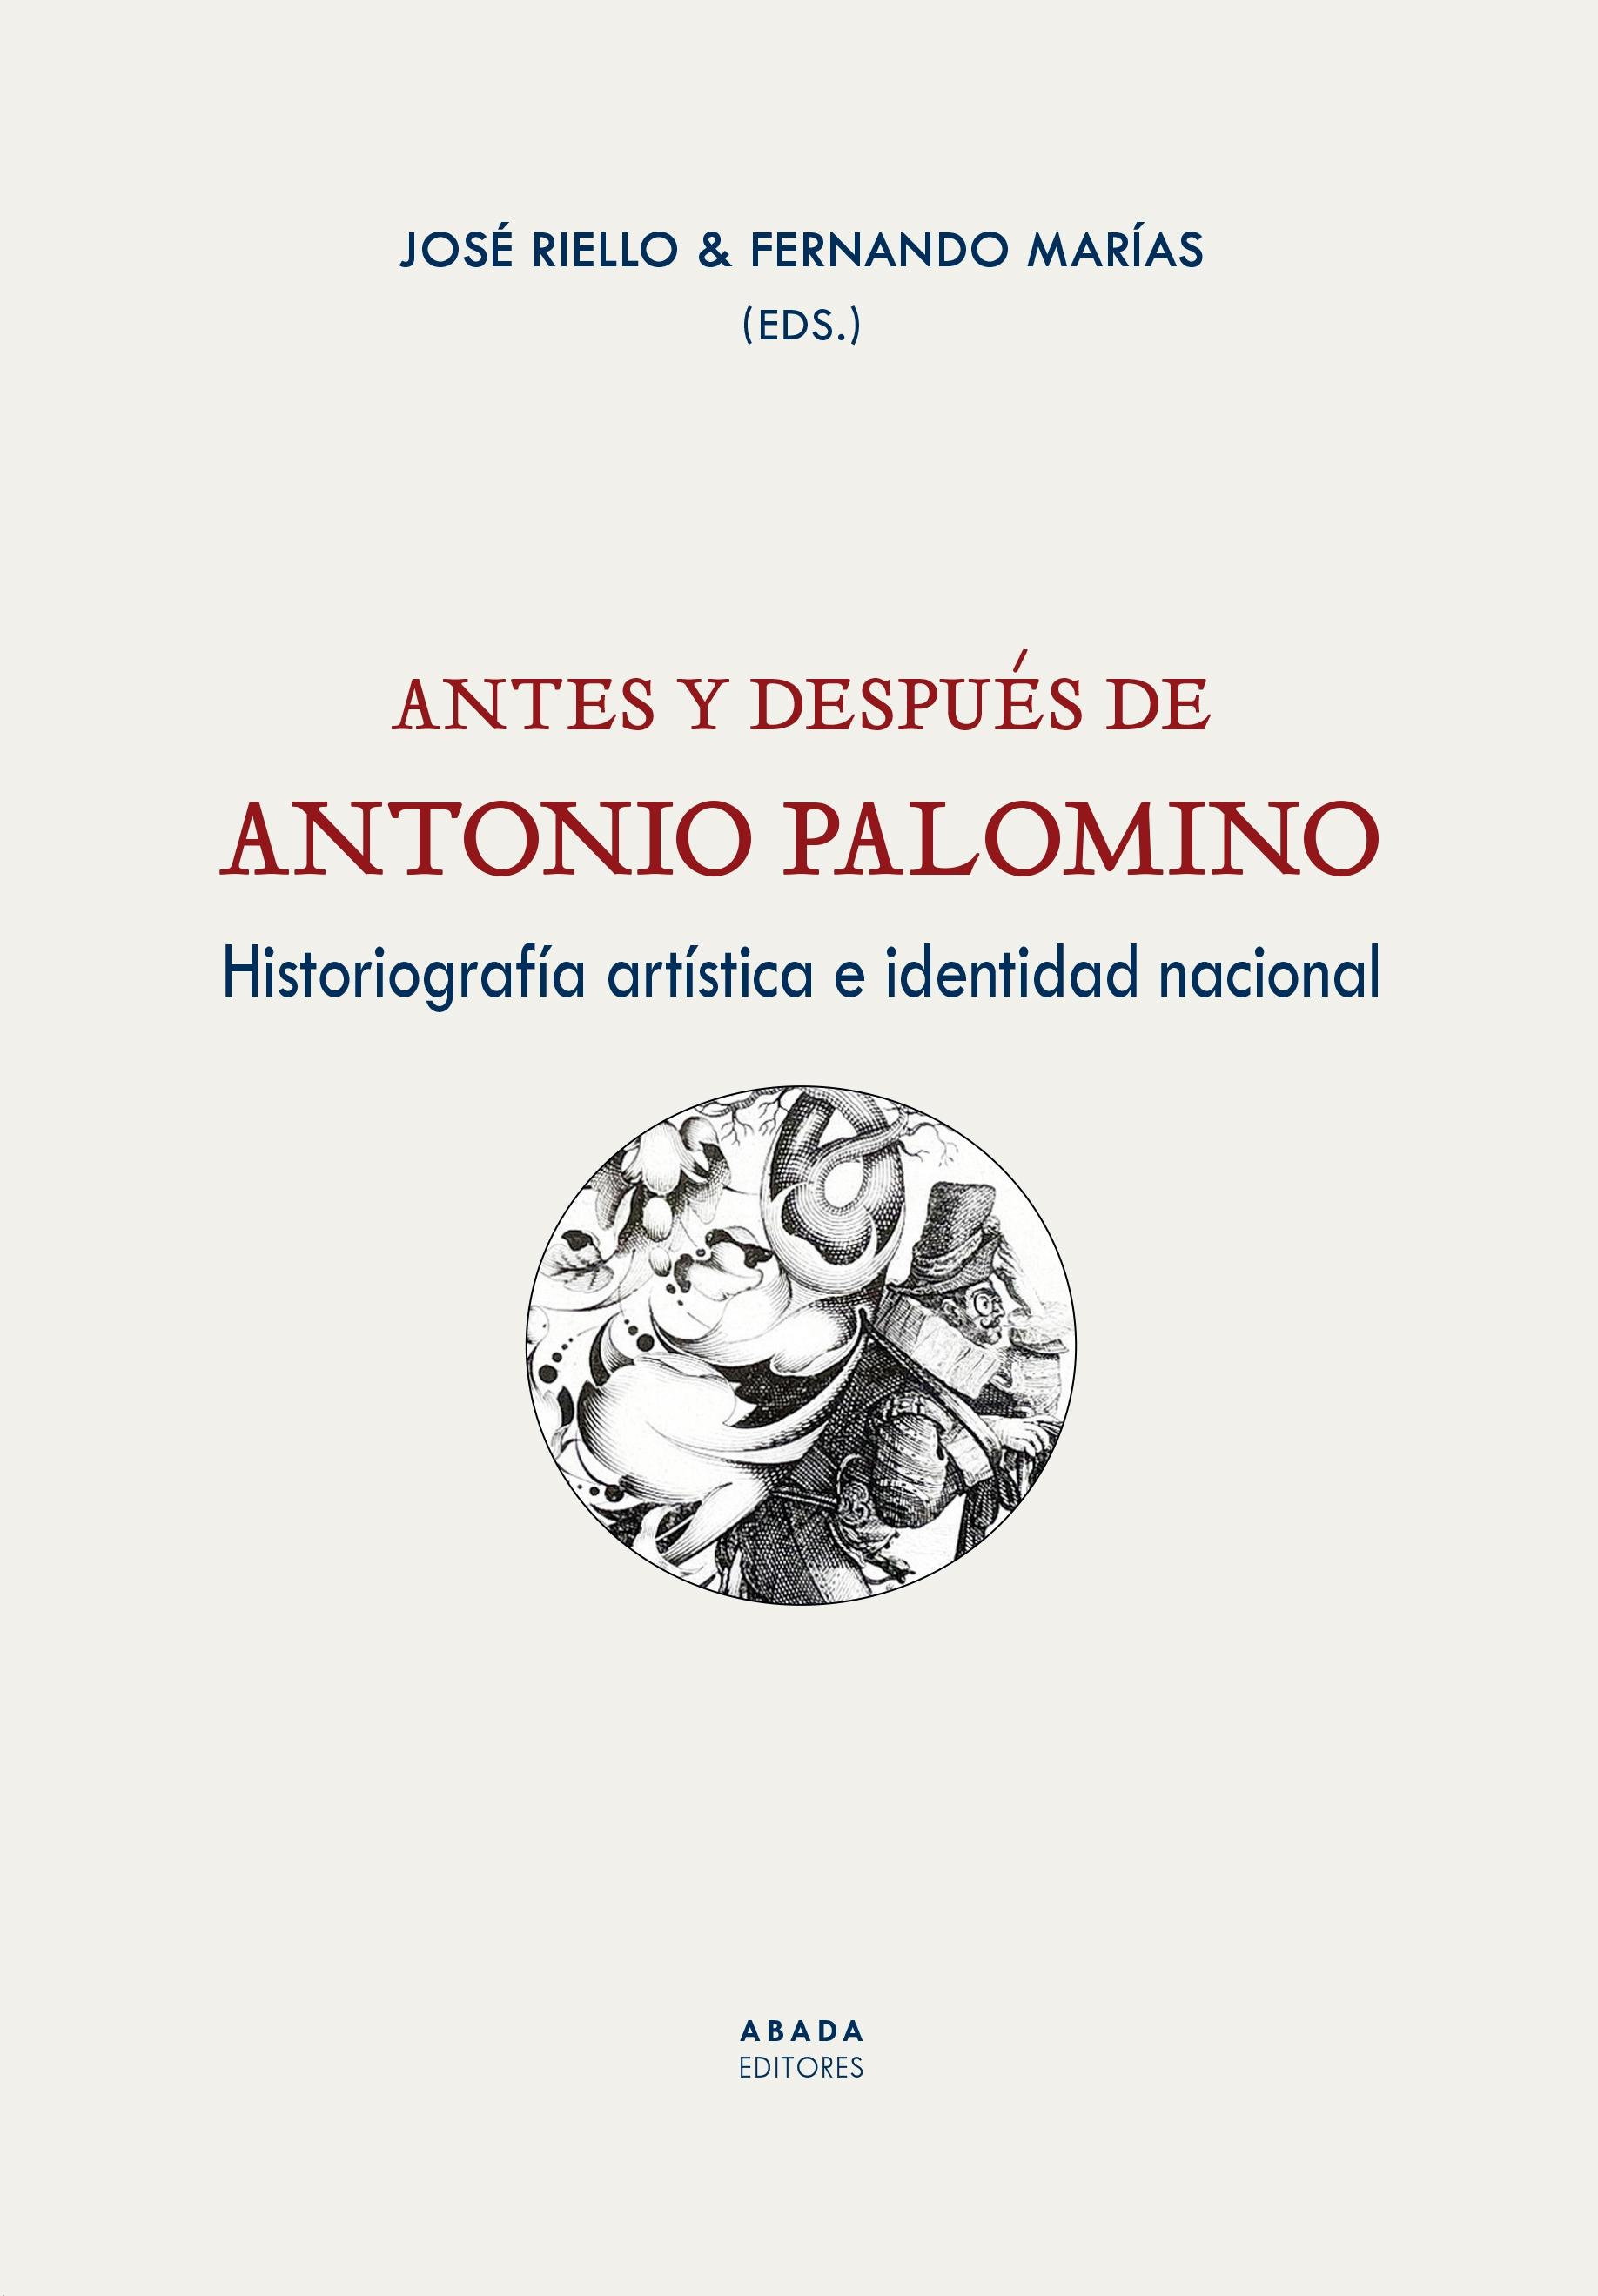 ANTES Y DESPUÉS DE ANTONIO PALOMINO "Historiografía artística e identidad nacional"